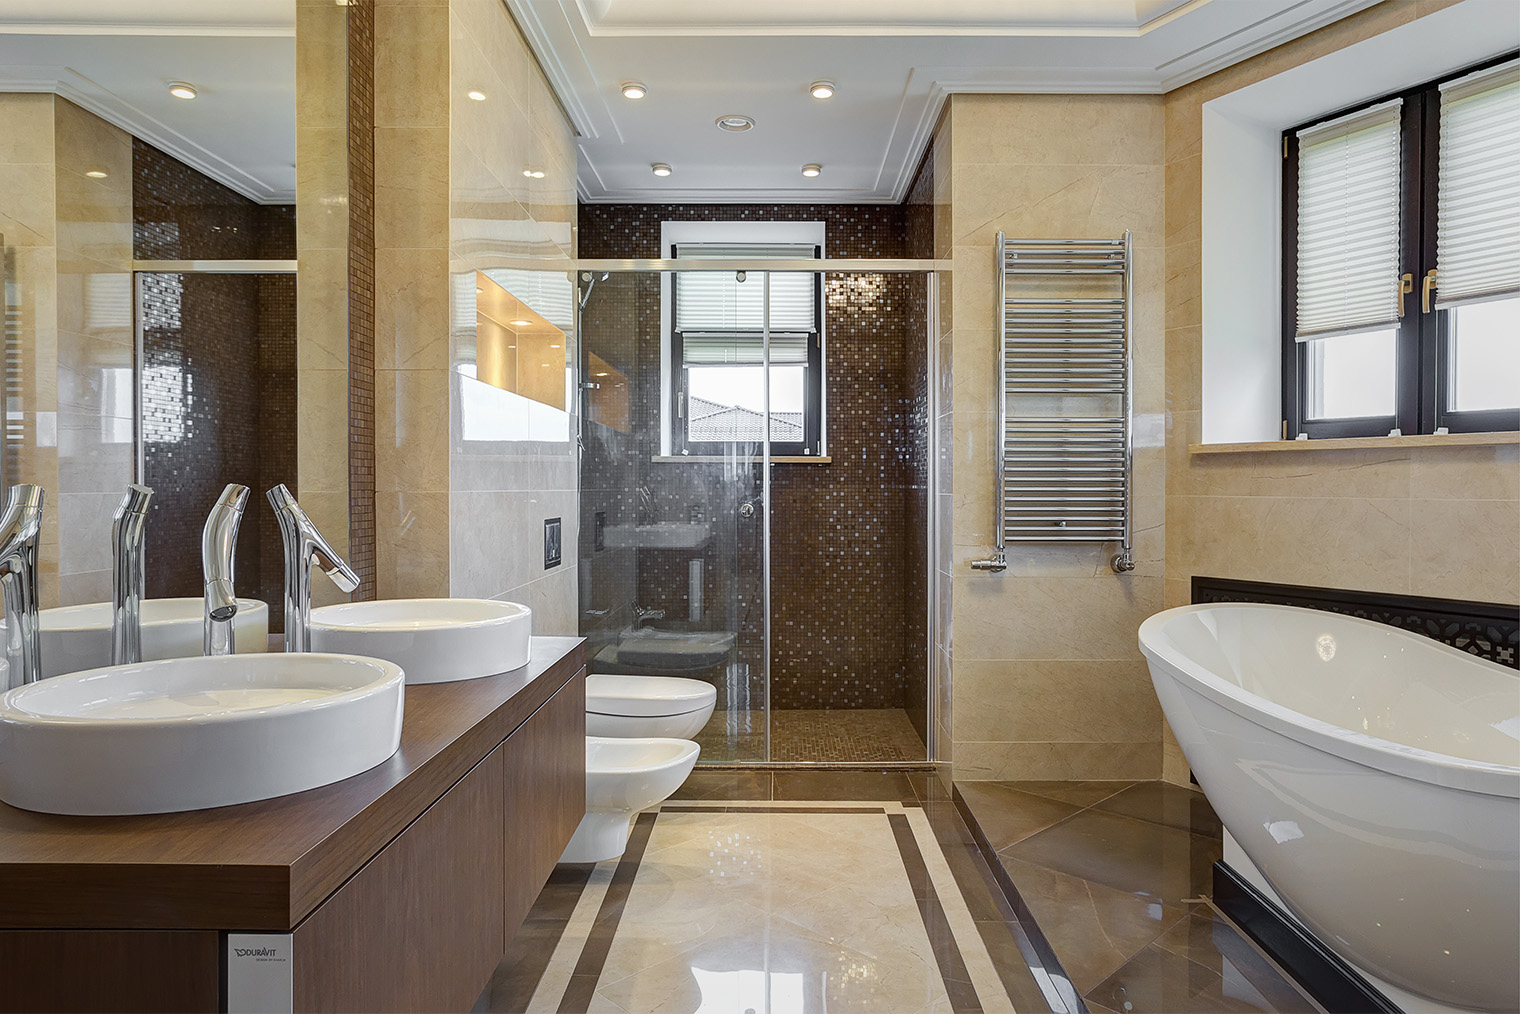 В большой ванной комнате вариантов расстановки и дизайна сантехники больше. Например, можно использовать ванну в виде чаши и напольный смеситель к ней. Источник: Artserstudio / Sutterstock